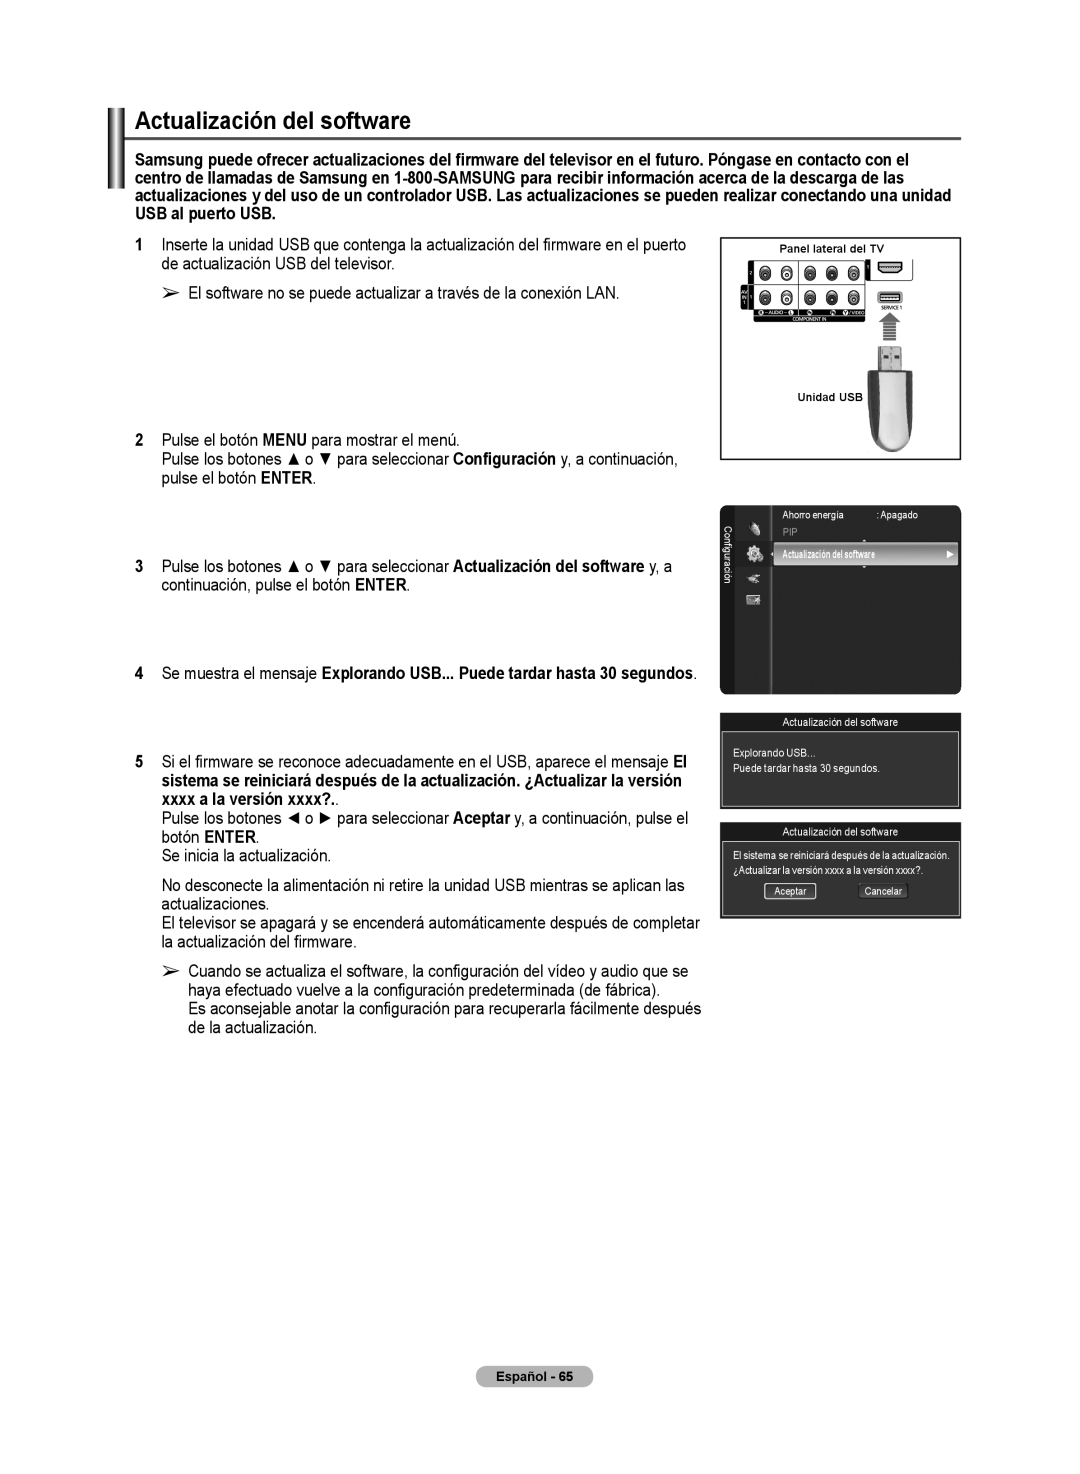 Samsung 510 user manual Actualización del software, Panel lateral del TV Unidad USB 